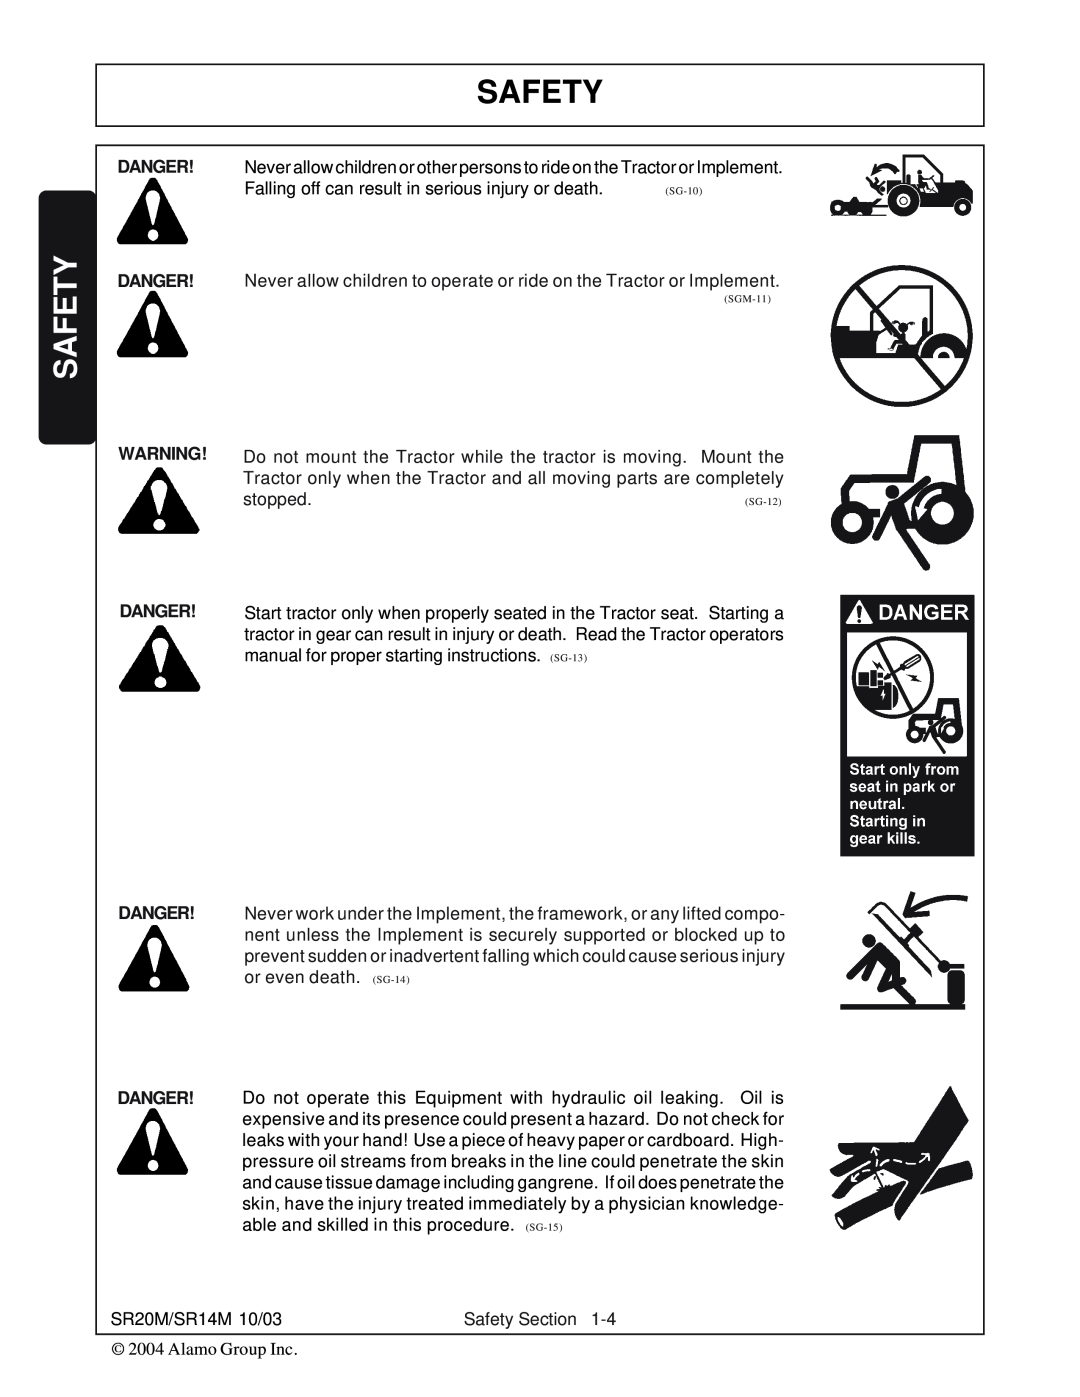 Alamo SR20, SR14 manual Safety, Danger Danger Danger, SG-10, SGM-11 